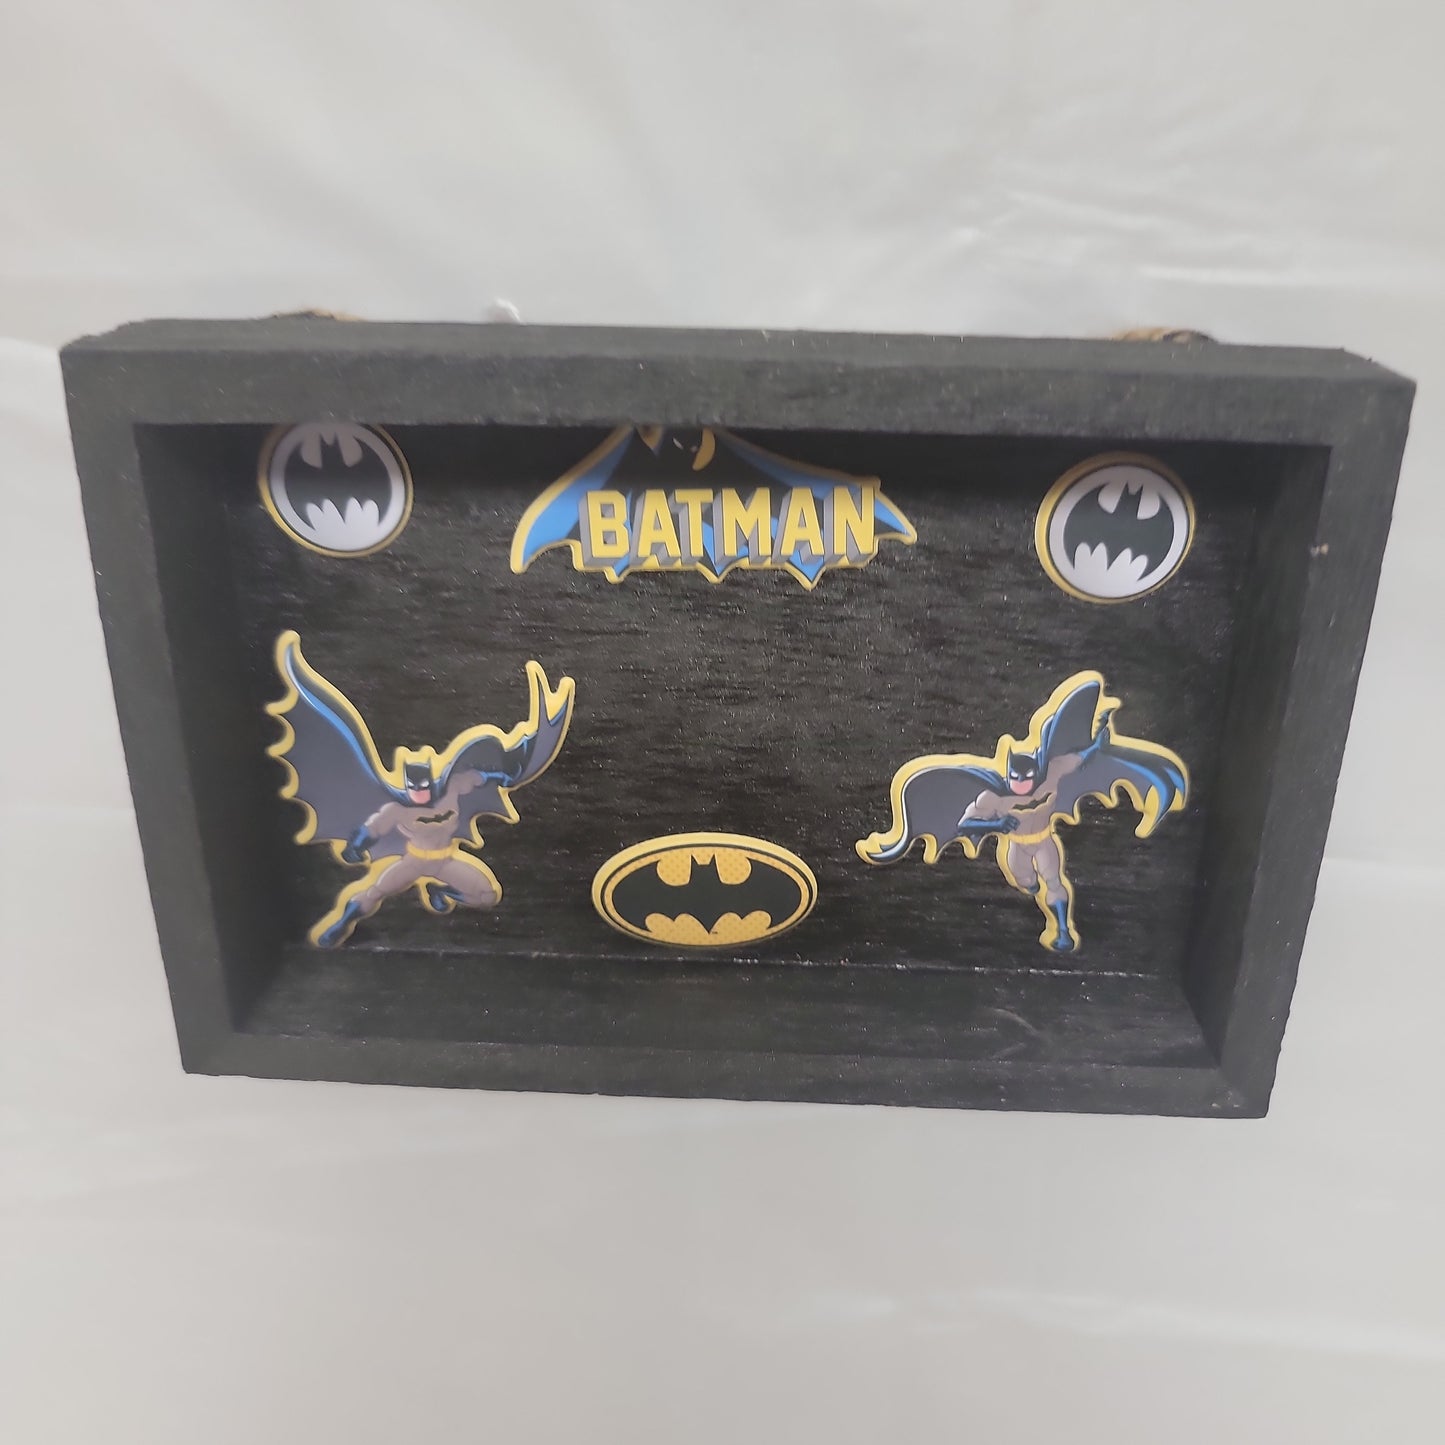 Batman shadow box a